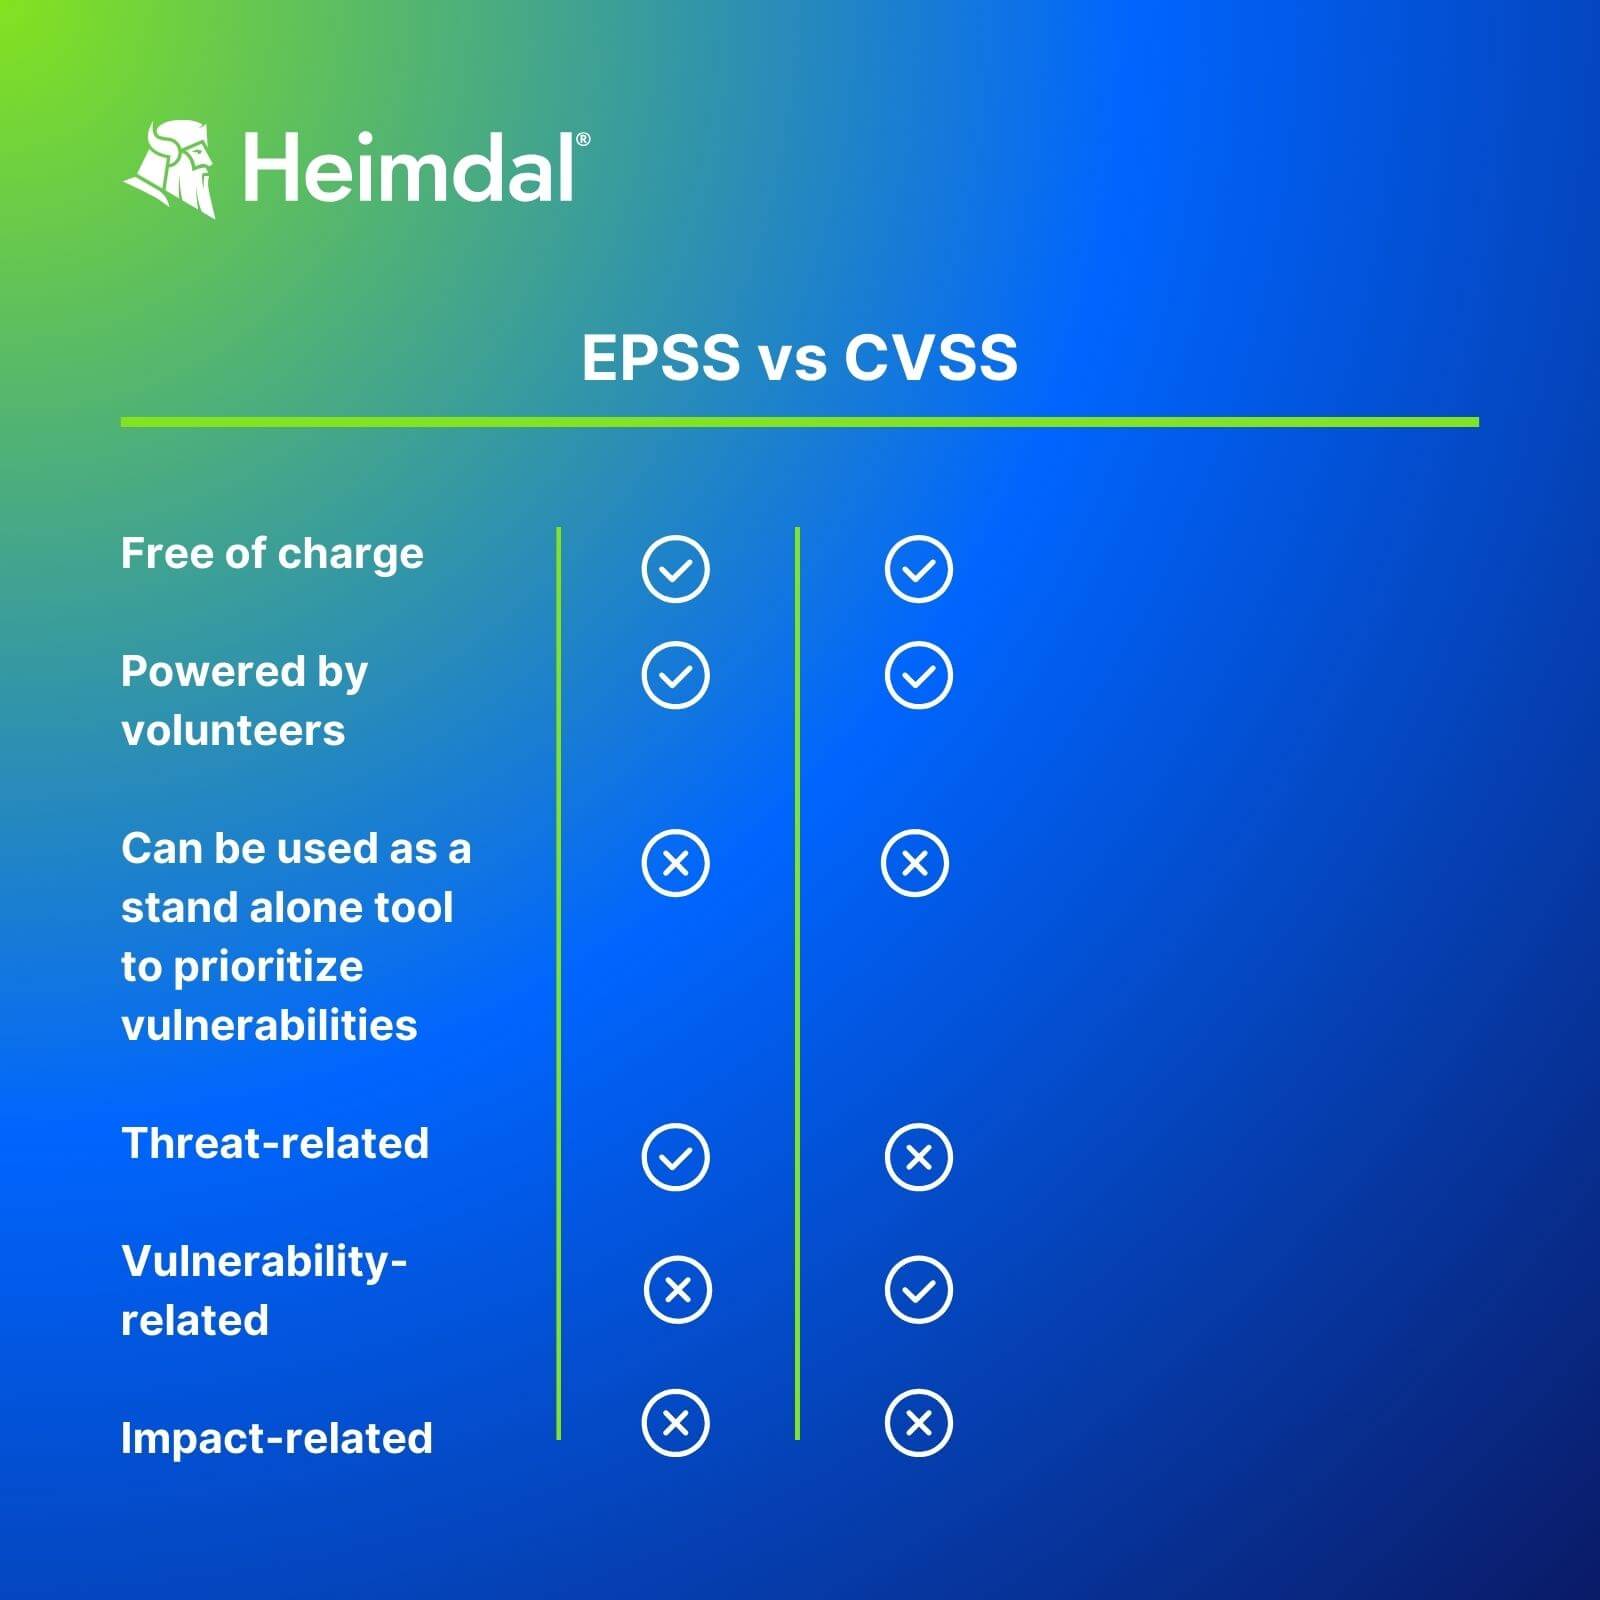 EPSS vs CVSS